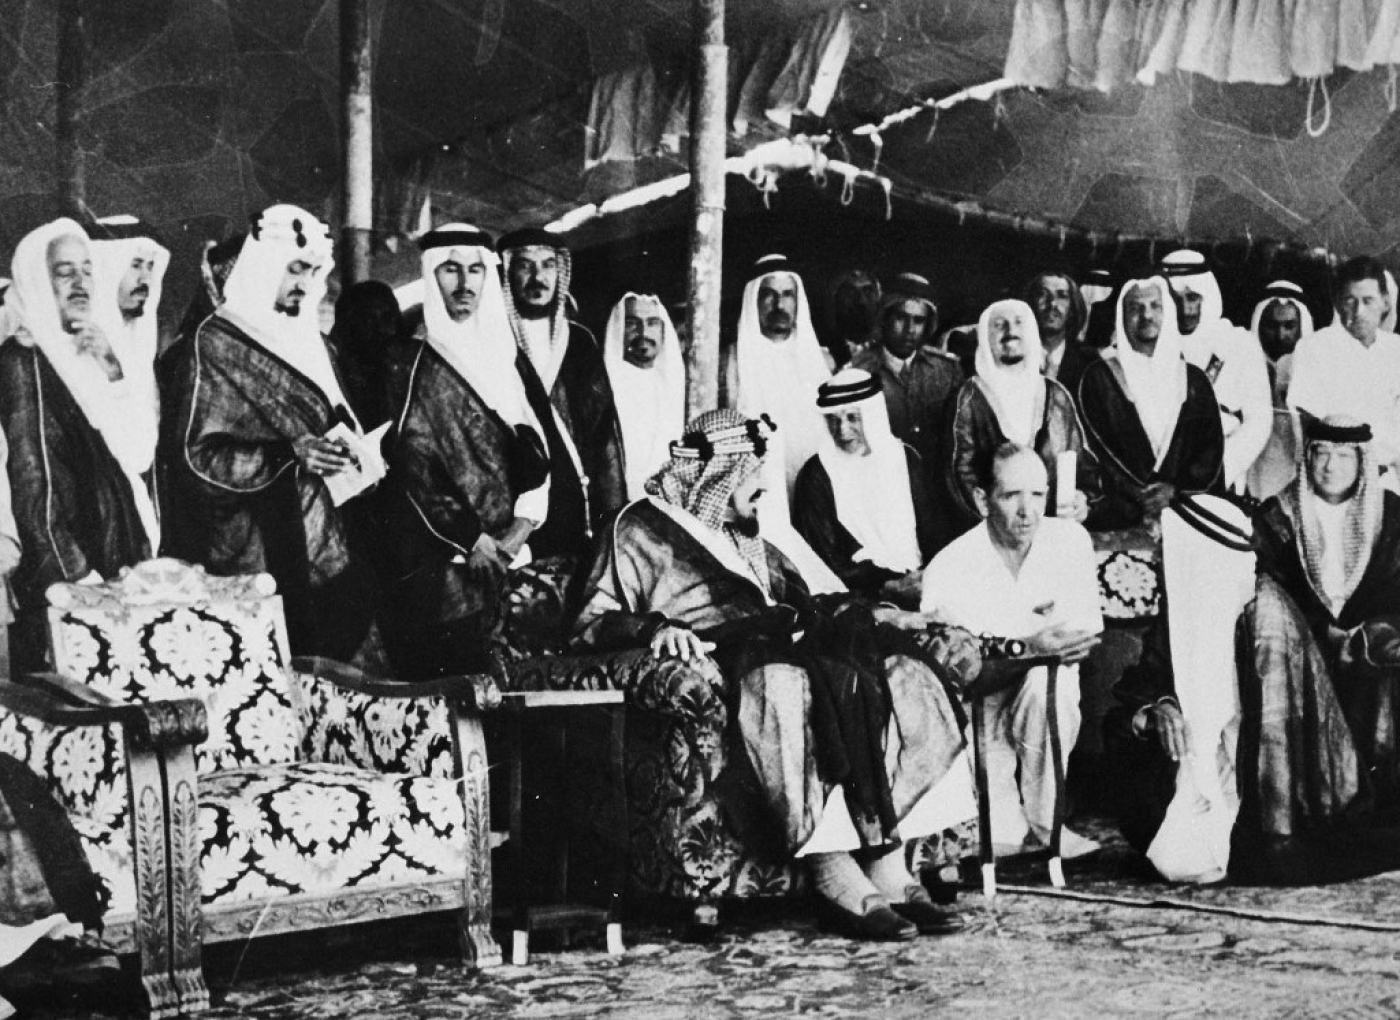 Le fondateur de l’Arabie saoudite, le roi Abdelaziz ben Abderrahmane al-Saoud, s’entretient avec le directeur général d’Aramco N. Devins, lors de la cérémonie d’ouverture de la liaison ferroviaire Riyad-Dammam en octobre 1951 (AFP)